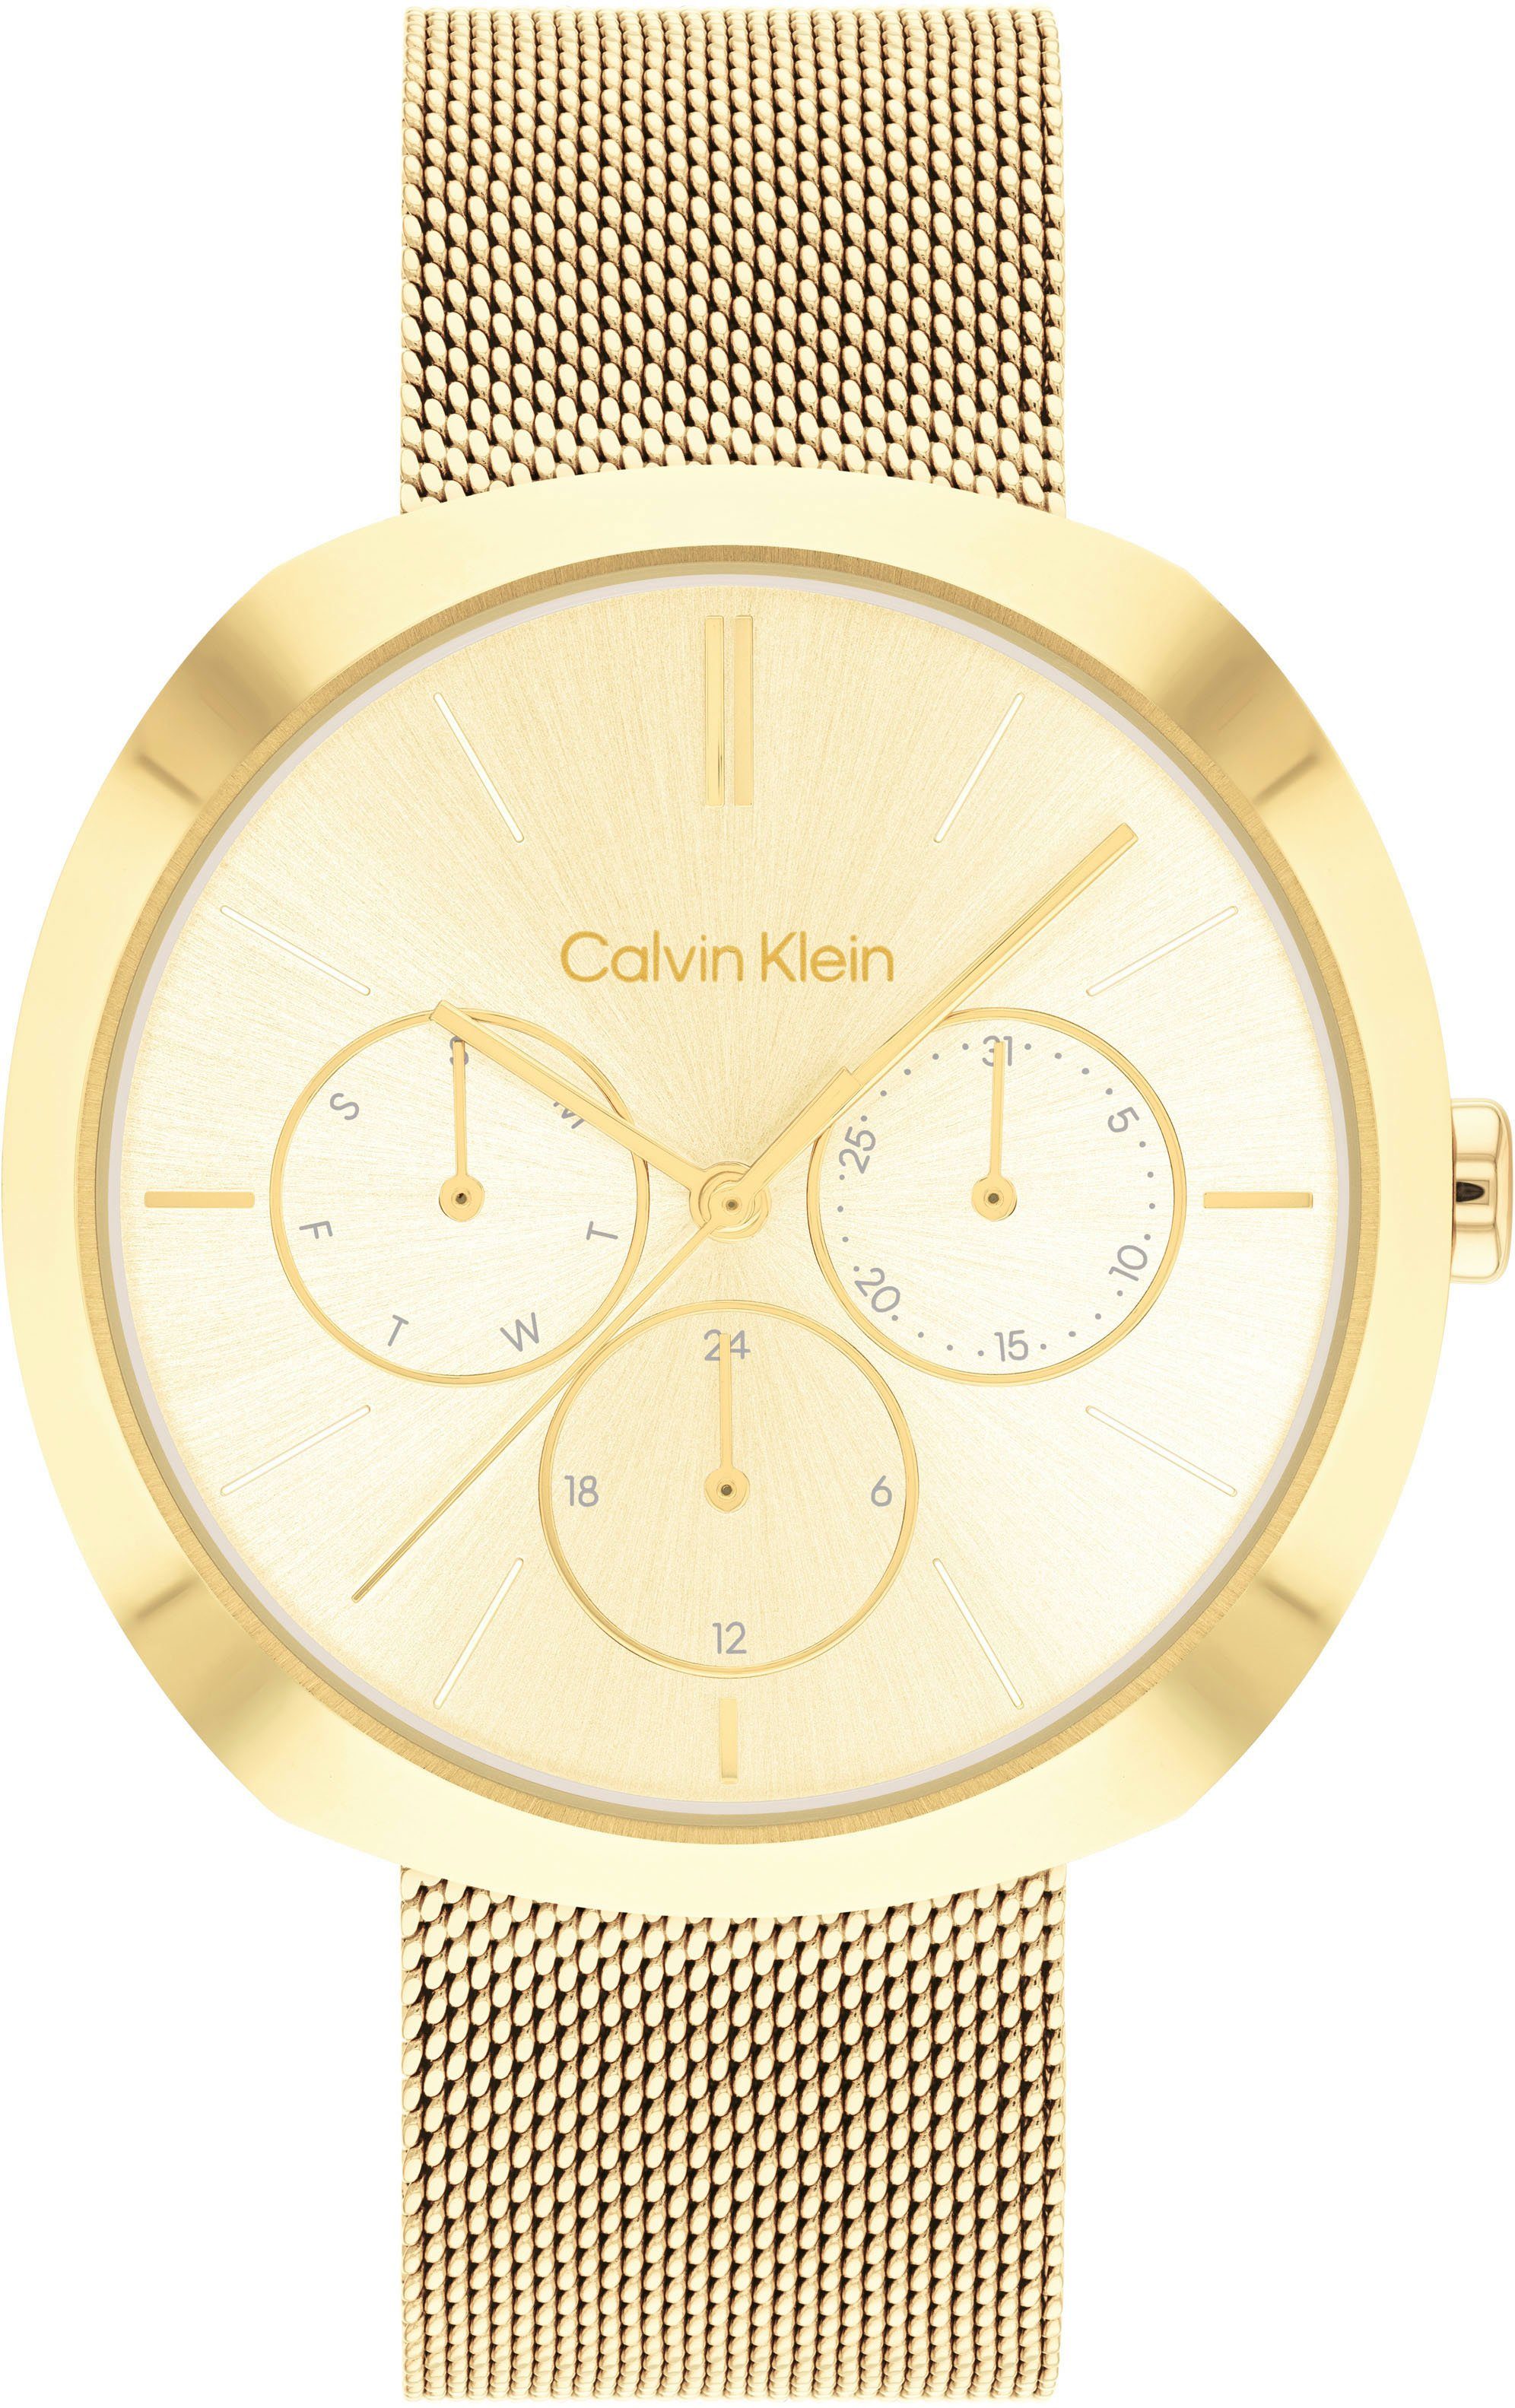 Calvin Klein Multifunktionsuhr CK SHAPE, 25200339, Quarzuhr, Armbanduhr, Damenuhr, Datum, IP-Beschichtung